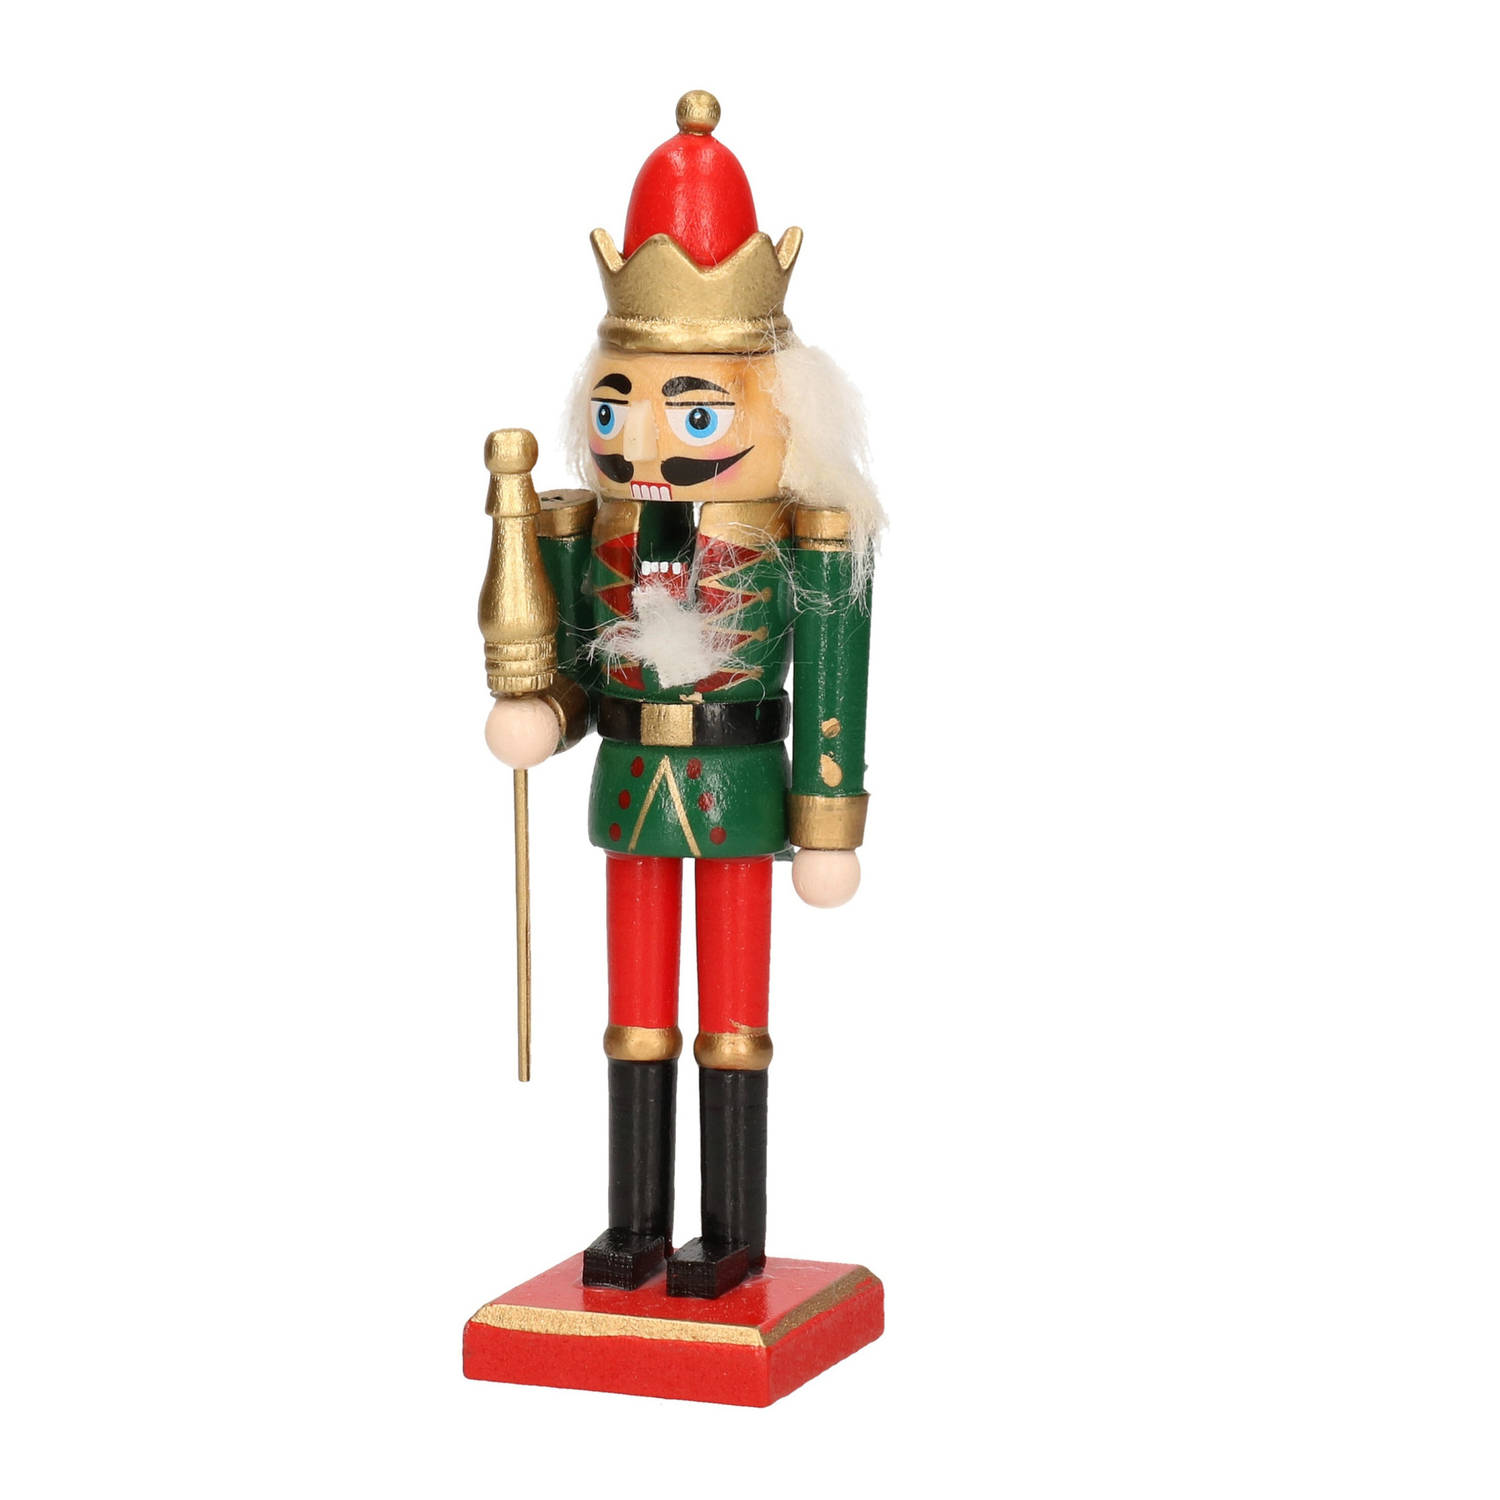 1x Kerst decoratie notenkraker pop/soldaat 15 cm kerstversiering groen/rood - Krestdecoratie poppetjes